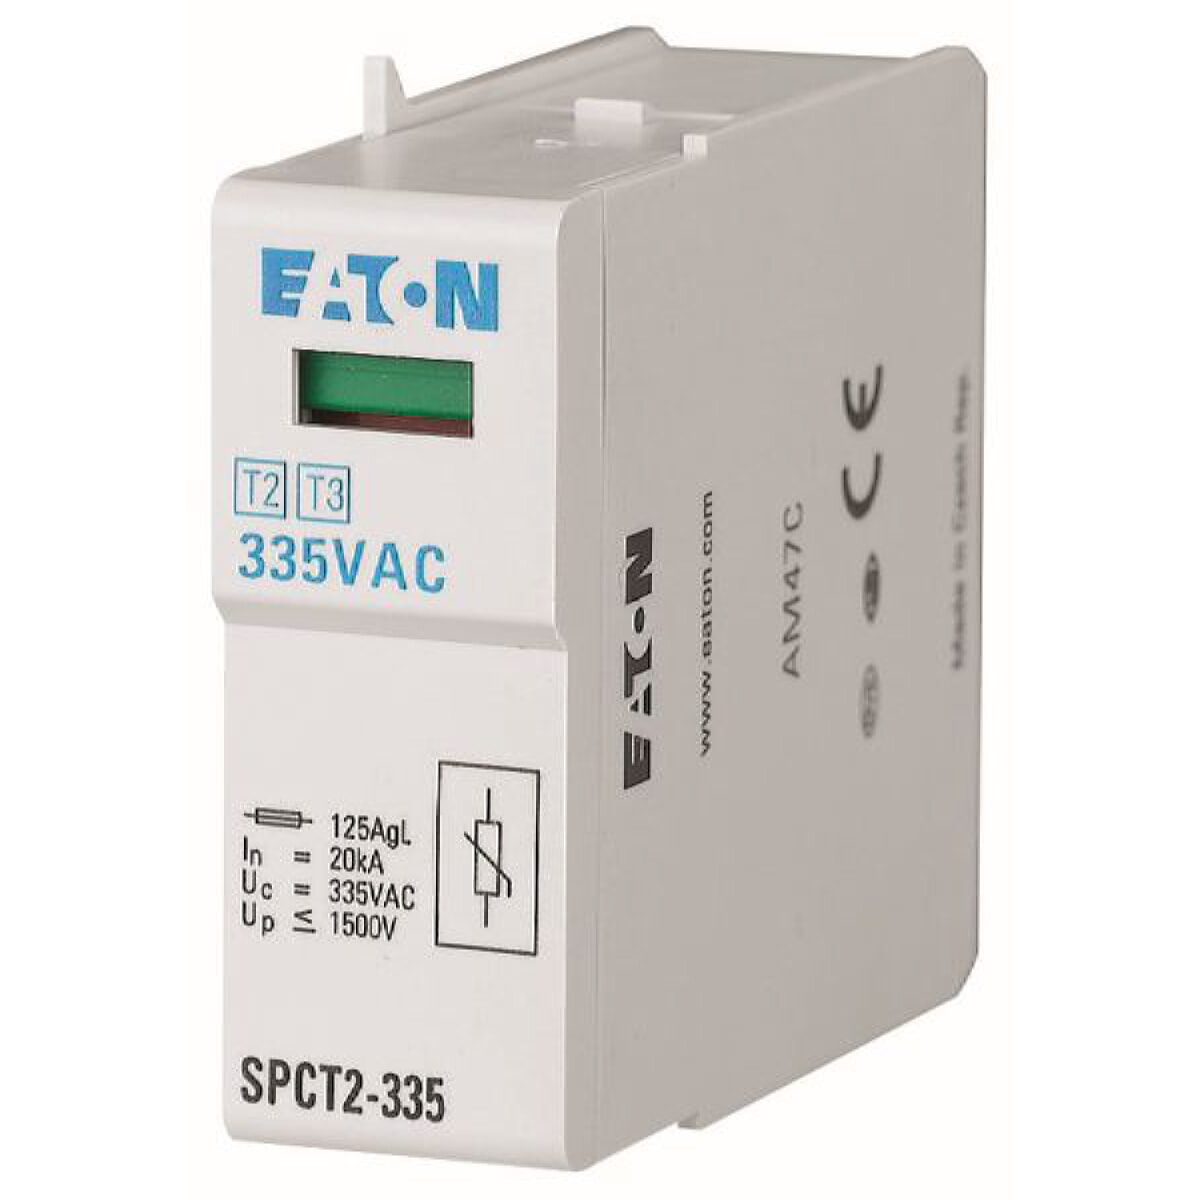 Eaton Electric Überspannungsableiter SPCT2-335